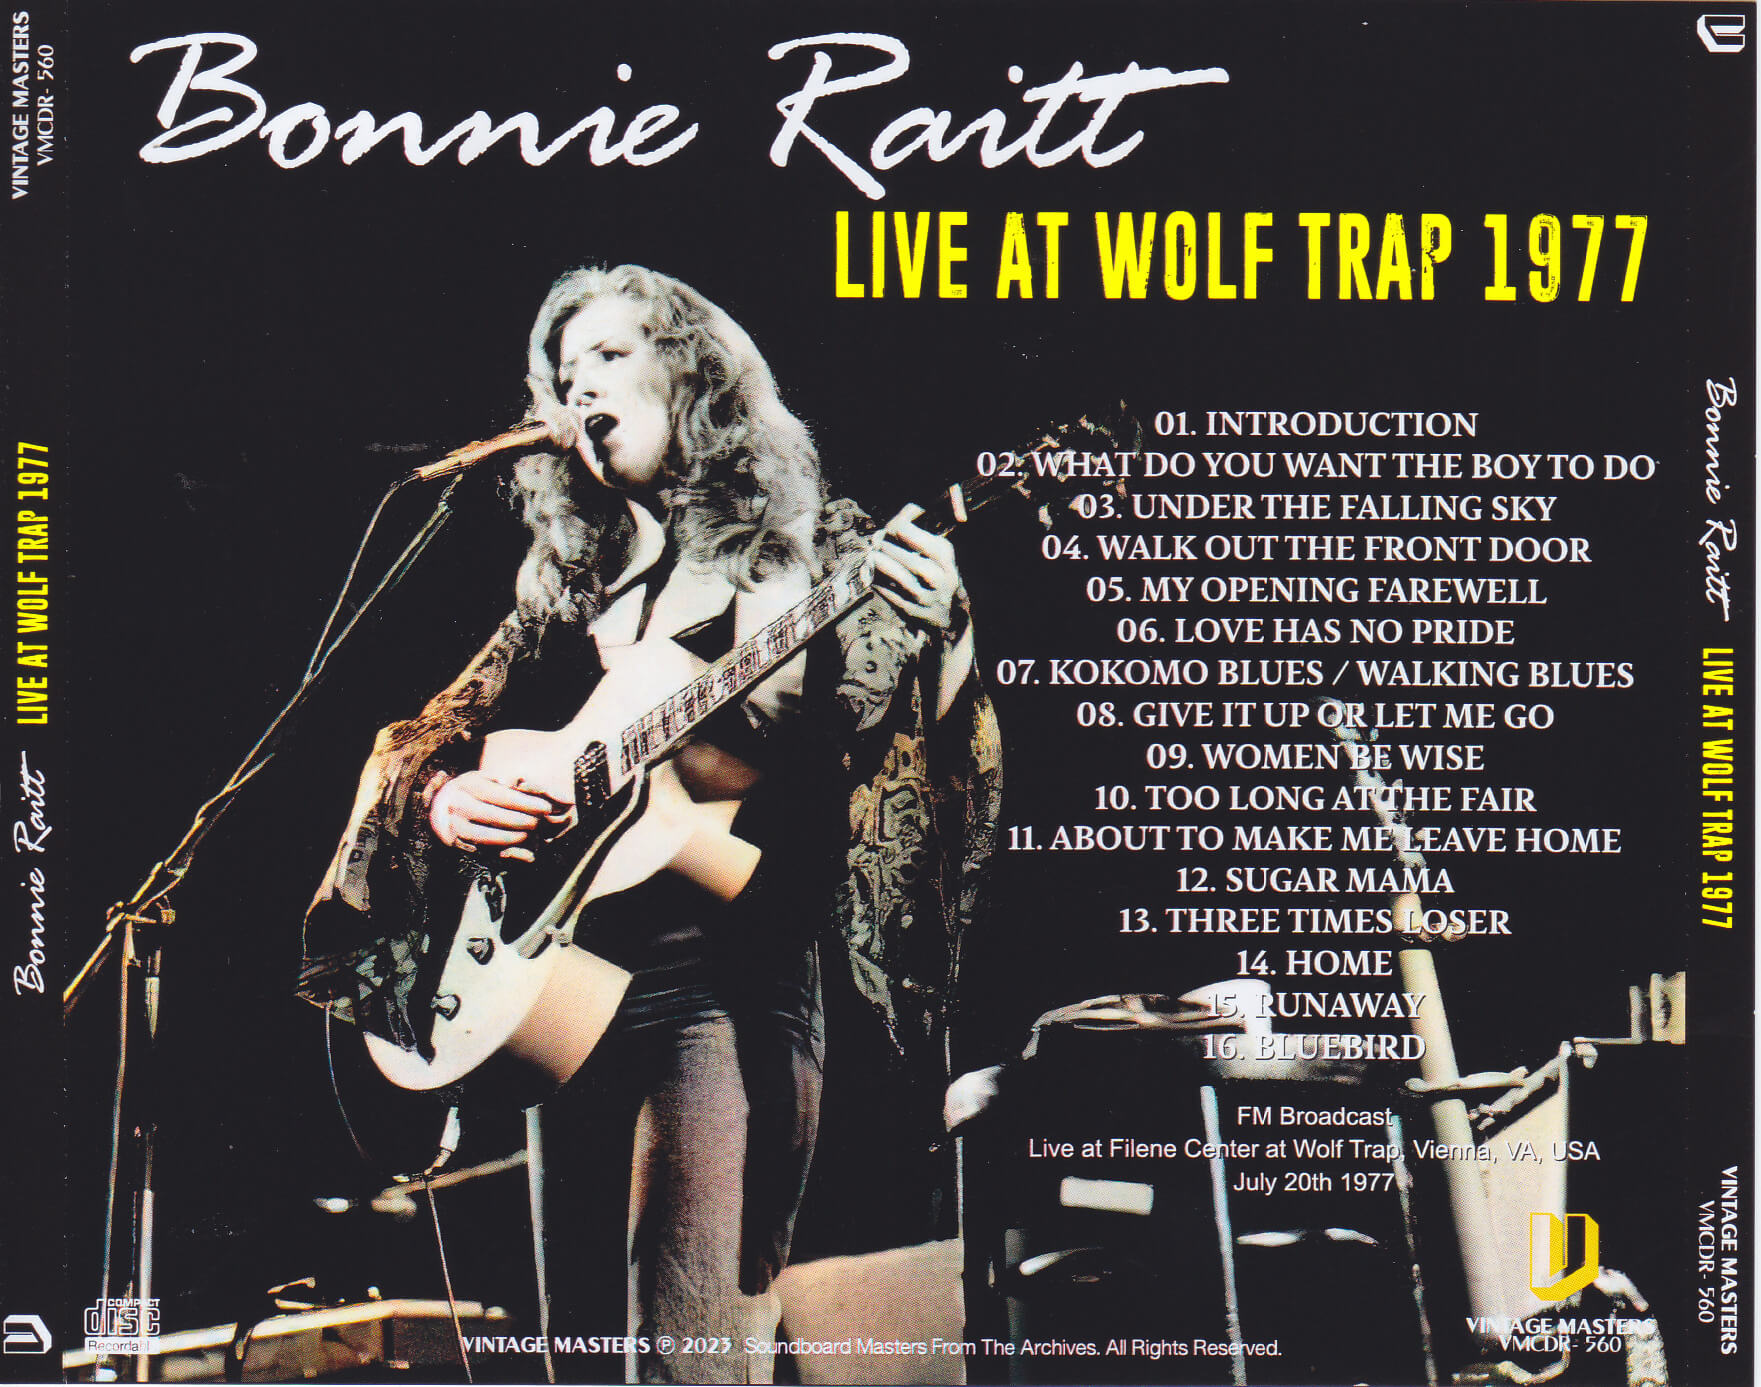 Bonnie Raitt / Live At Wolf Trap 1977 / 1CDR – GiGinJapan